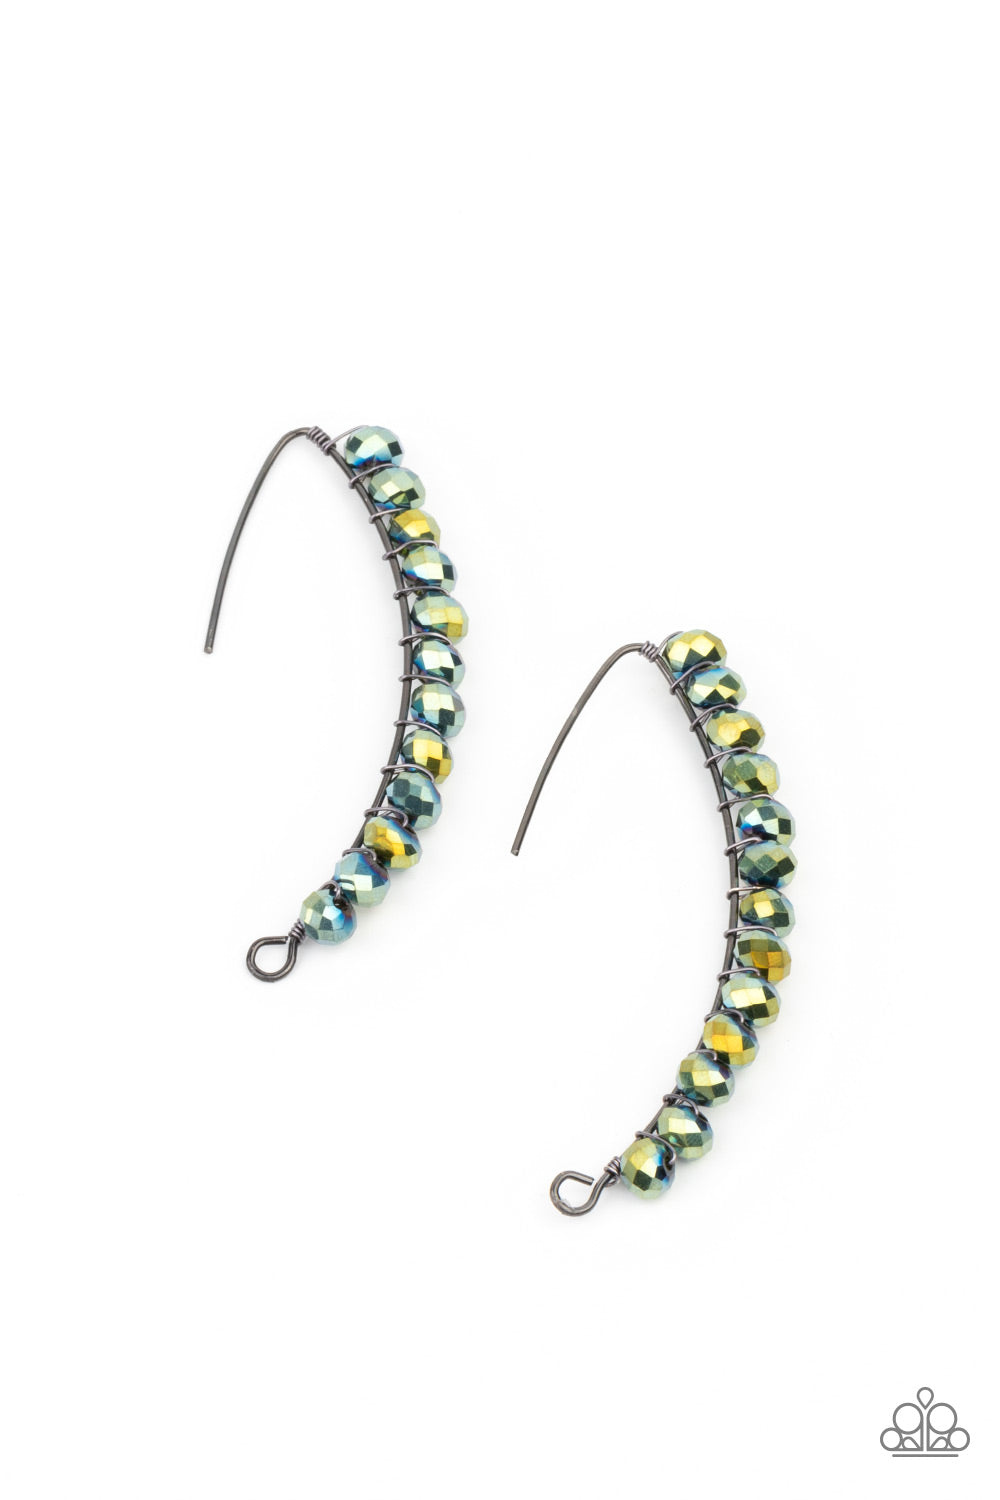 GLOW Hanging Fruit Multi
Earrings - Daria's Blings N Things